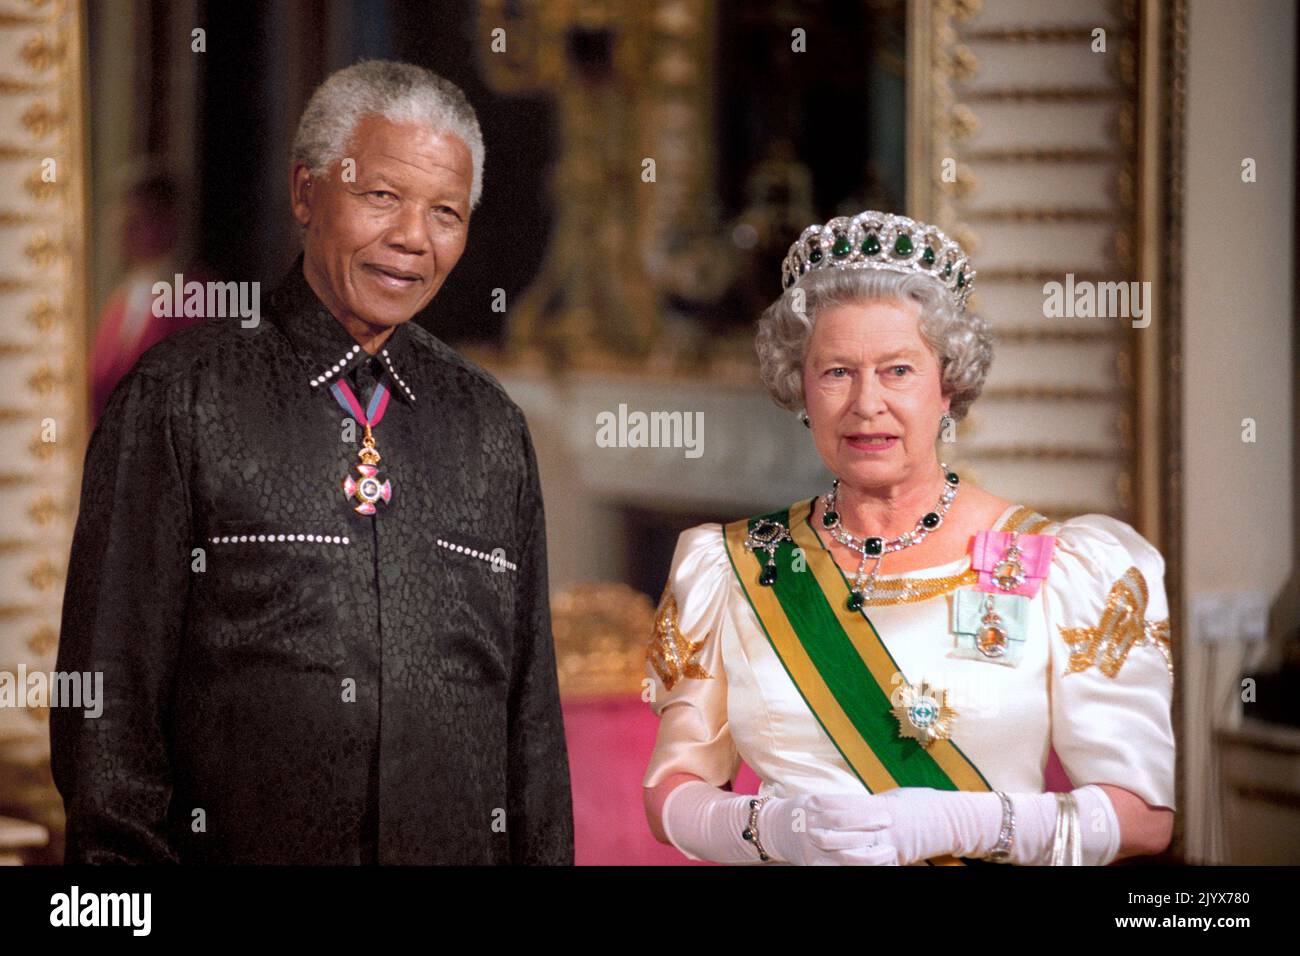 Foto de archivo de fecha 09/07/1996 del presidente sudafricano Nelson Mandela de pie con la reina Isabel II a su llegada al Palacio de Buckingham, para un banquete estatal en su honor. La reina murió pacíficamente en Balmoral esta tarde, ha anunciado el Palacio de Buckingham. Fecha de emisión: Jueves 8 de septiembre de 2022. Foto de stock